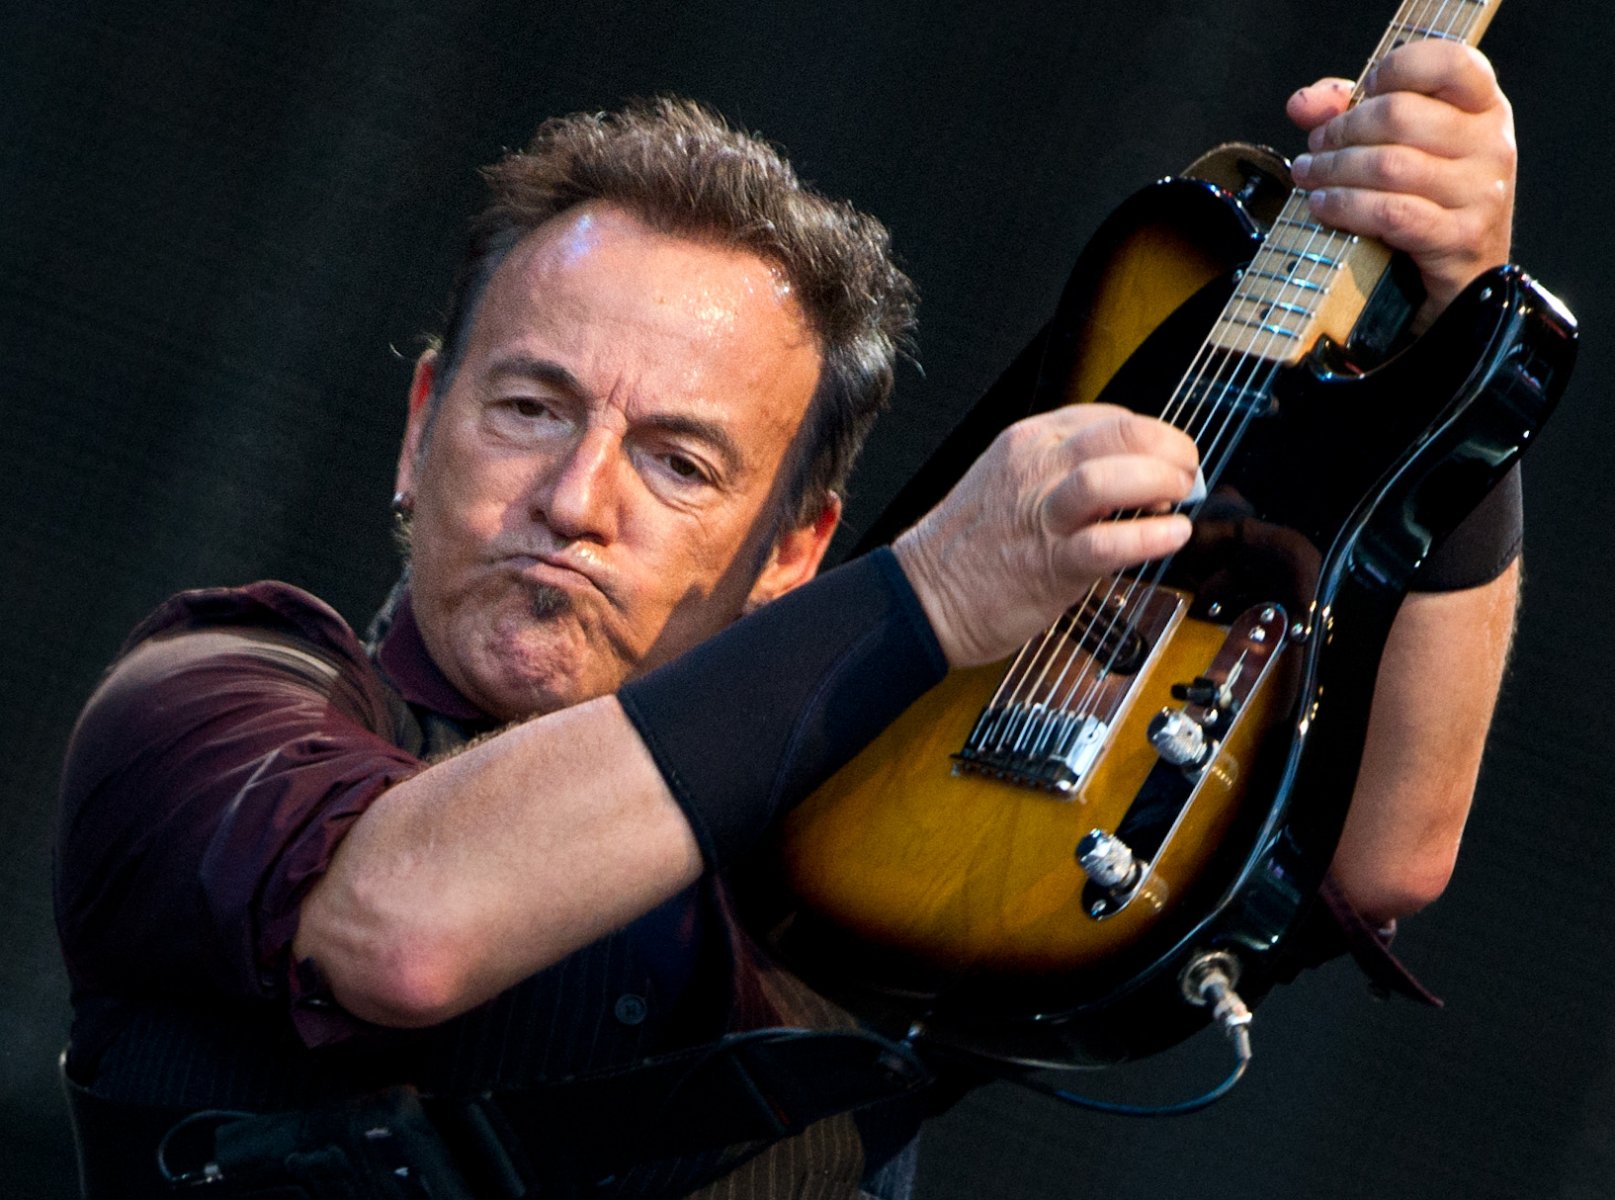 Zum Start der "Wrecking Ball"-Tour tritt der US-Rocksänger Bruce Springsteen in der ausverkauften Commerzbank-Arena in Frankfurt am Main auf. Foto: Boris Roessler/dpa